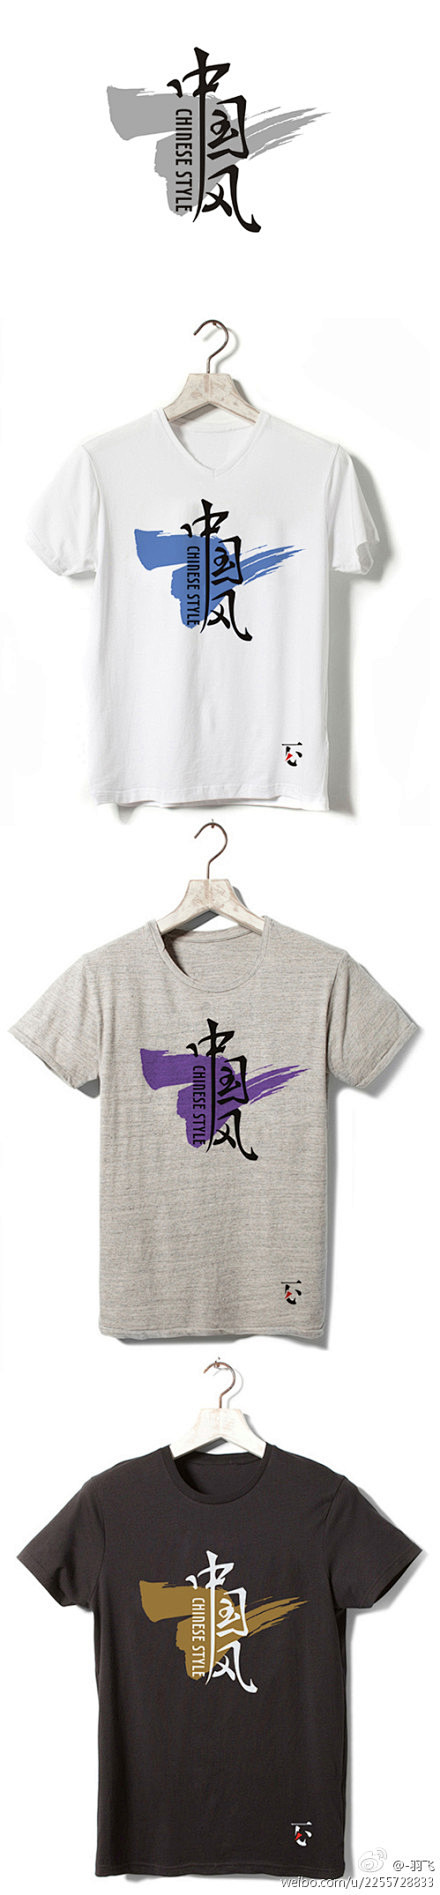 字得其乐第二期：T恤主题字体设计 中国风...